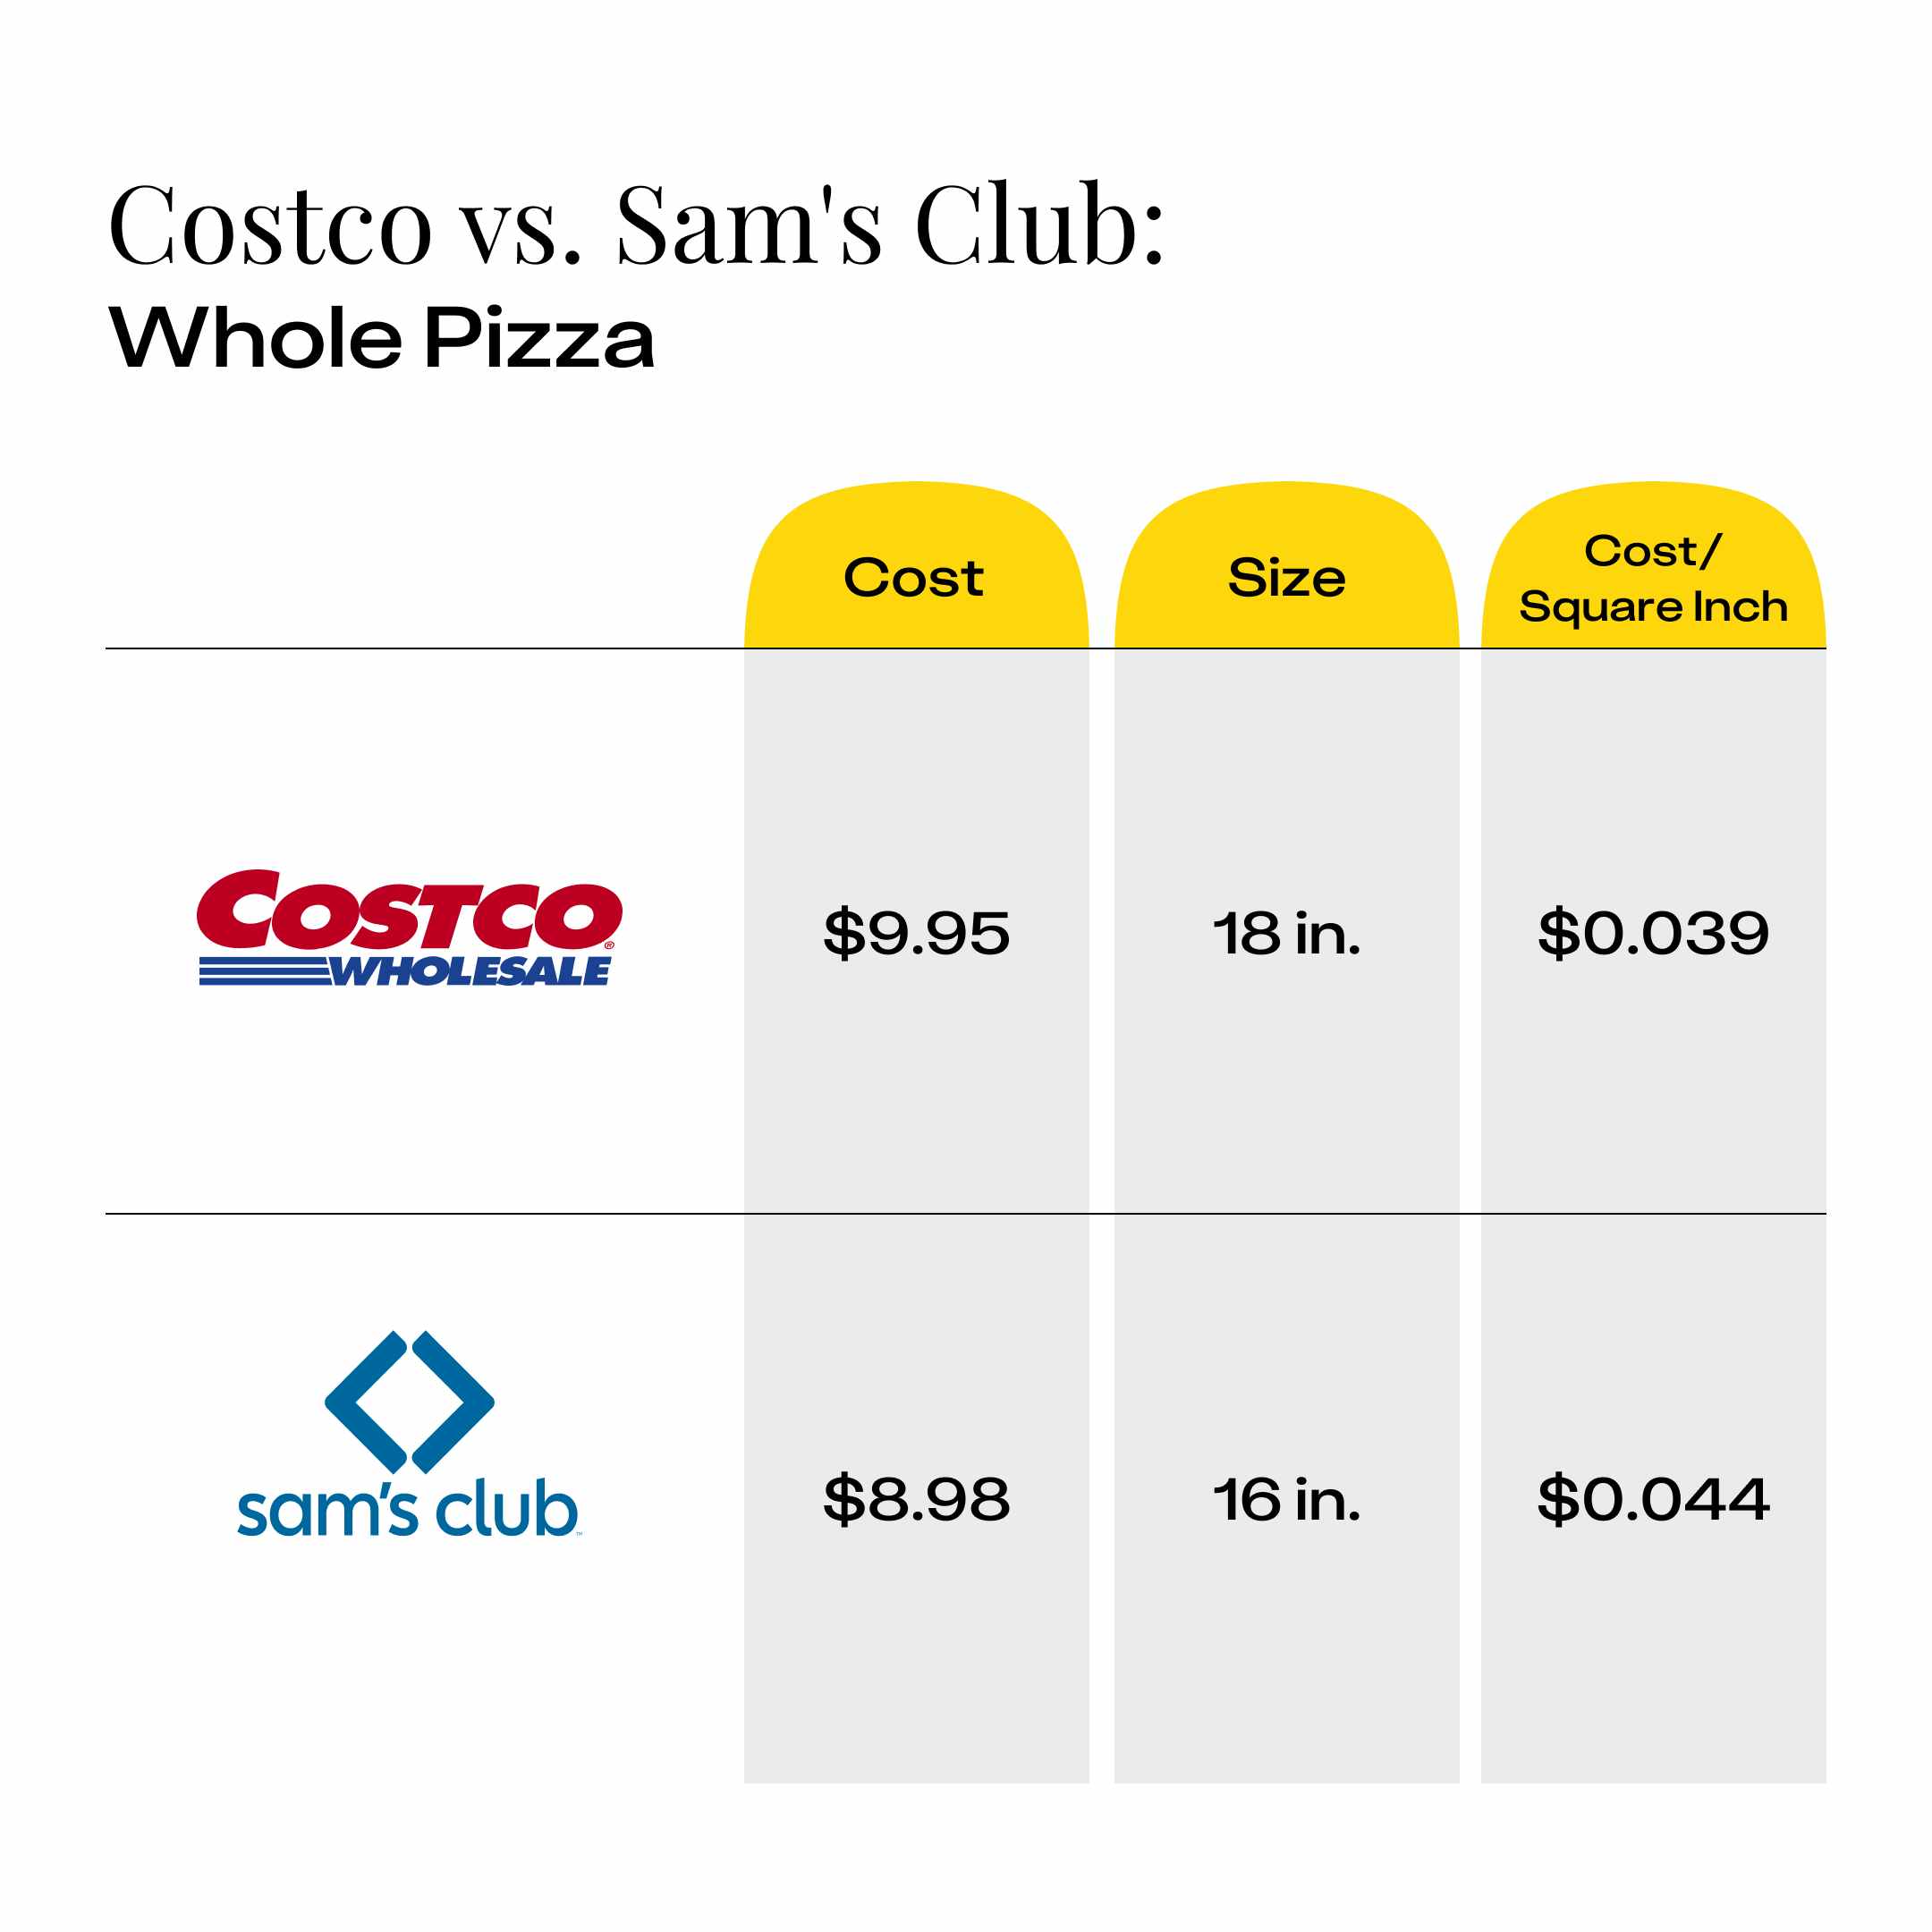 Cost comparison of Costco pizza vs Sam's Club pizza showing the cost per square inch of a whole pizza